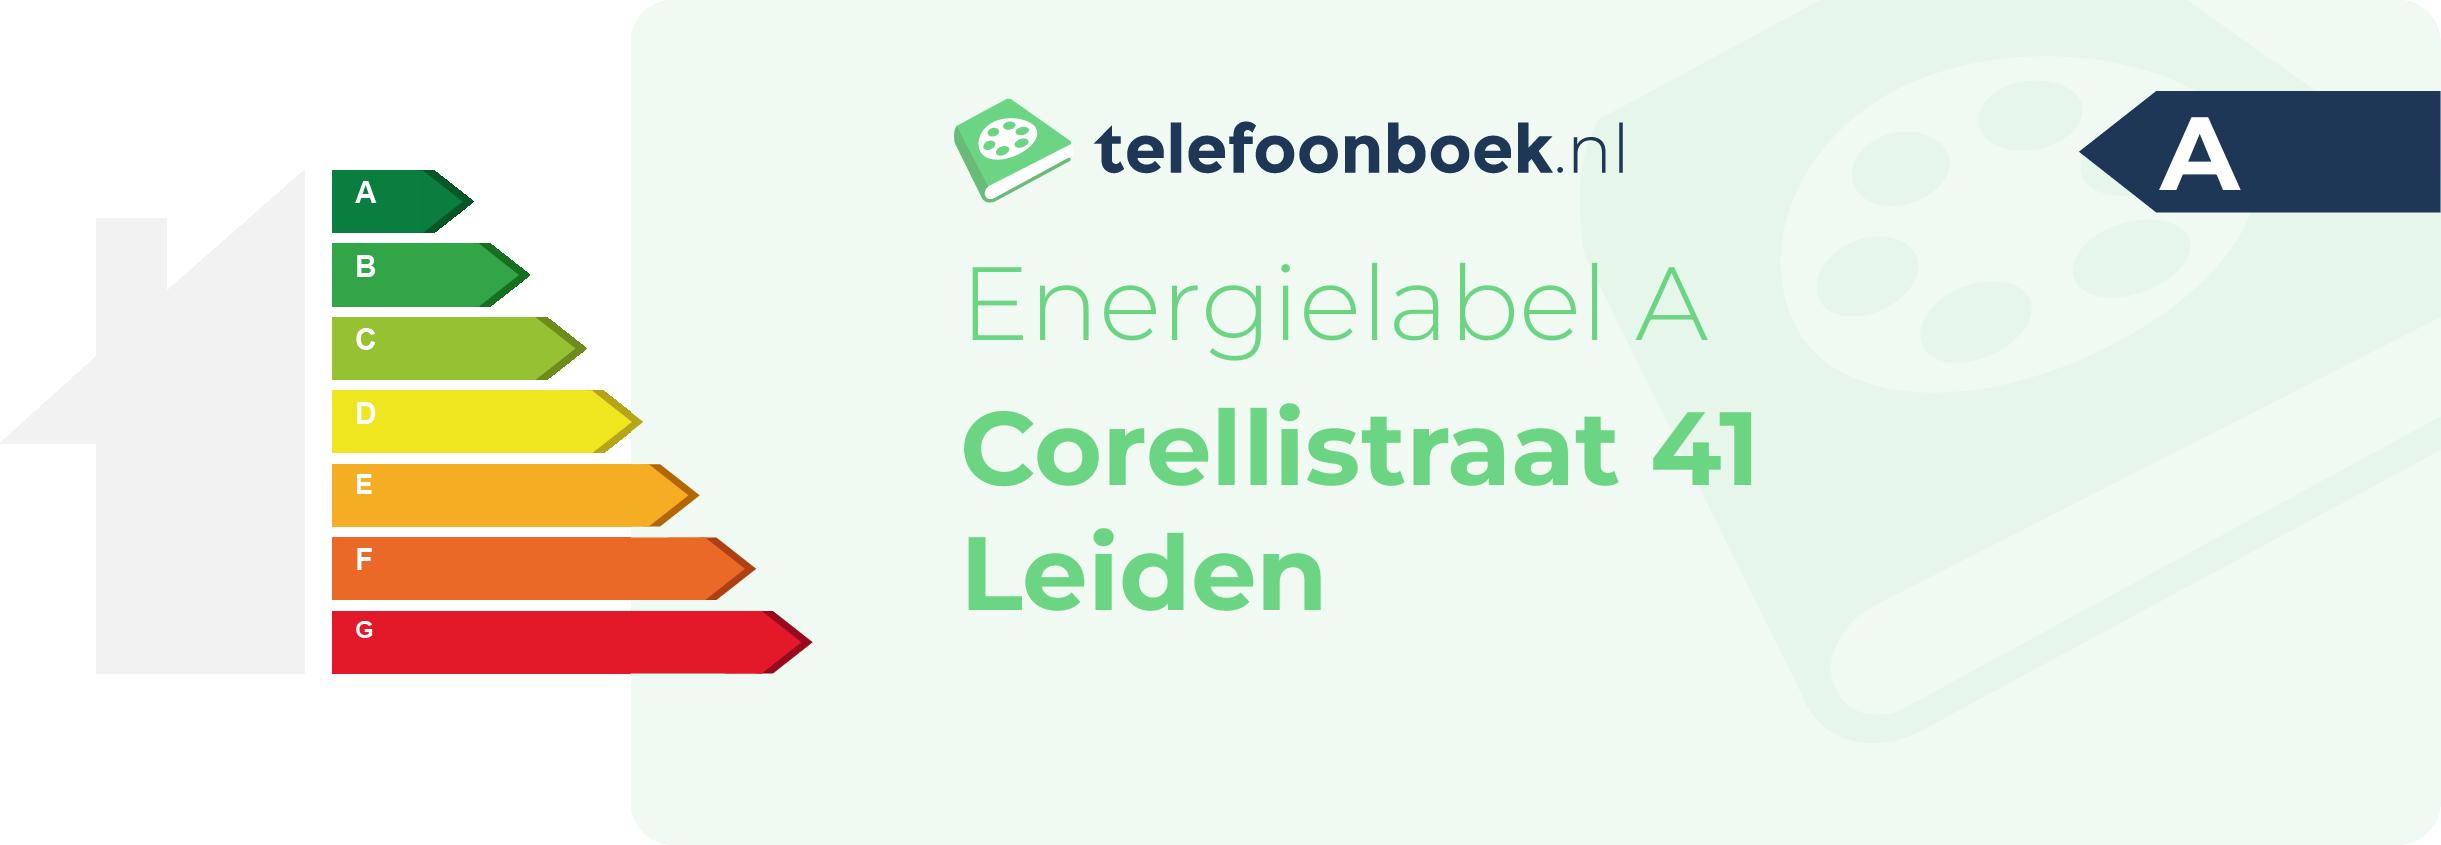 Energielabel Corellistraat 41 Leiden